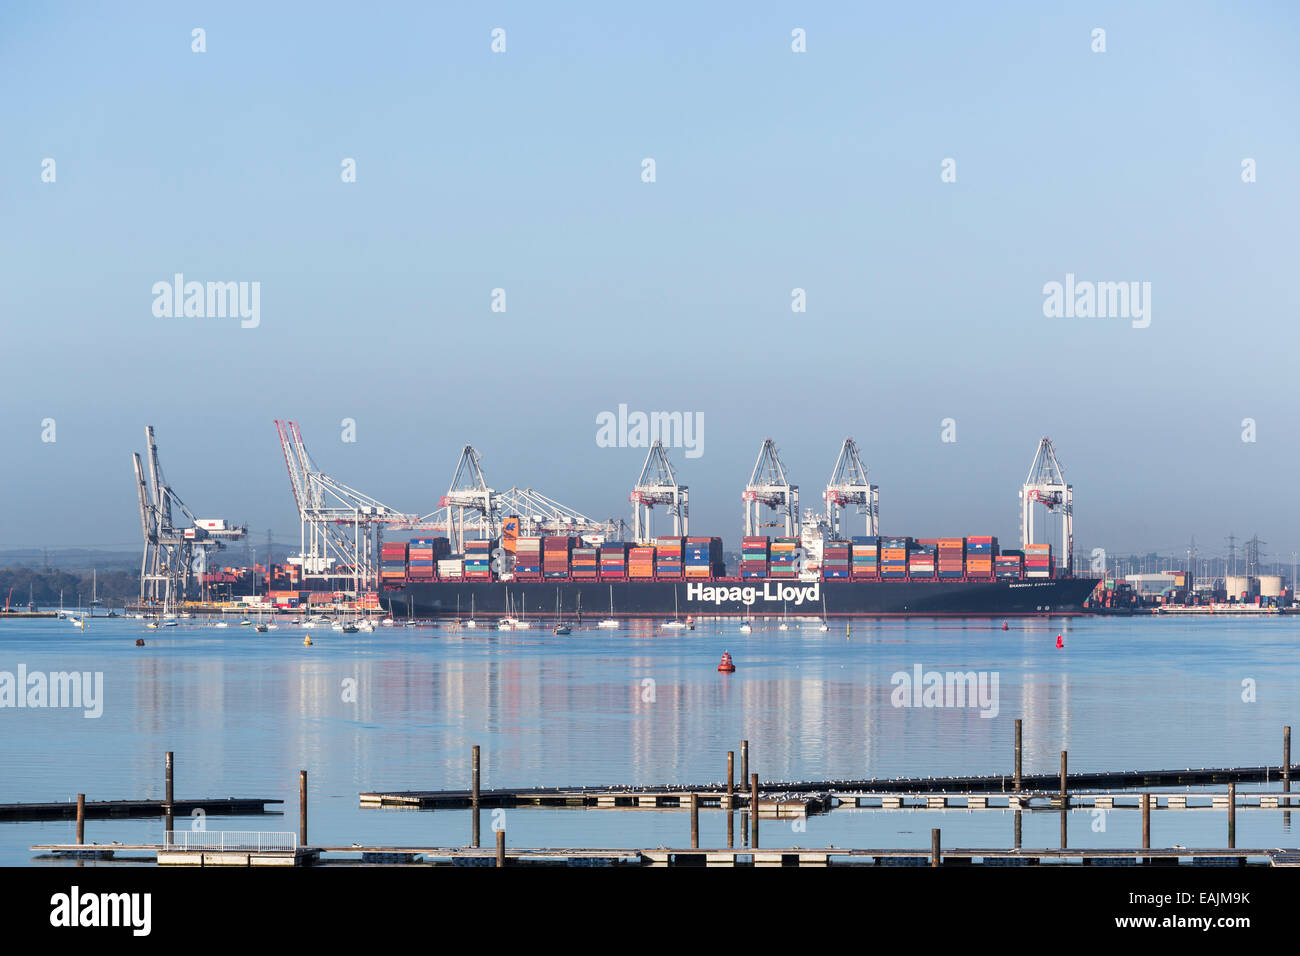 Enorme Hapag-Lloyd Container nave 'Shanghai Express' ormeggiato a Southampton Docks sul Solent, Hampshire, Regno Unito durante la giornata con un cielo blu chiaro Foto Stock